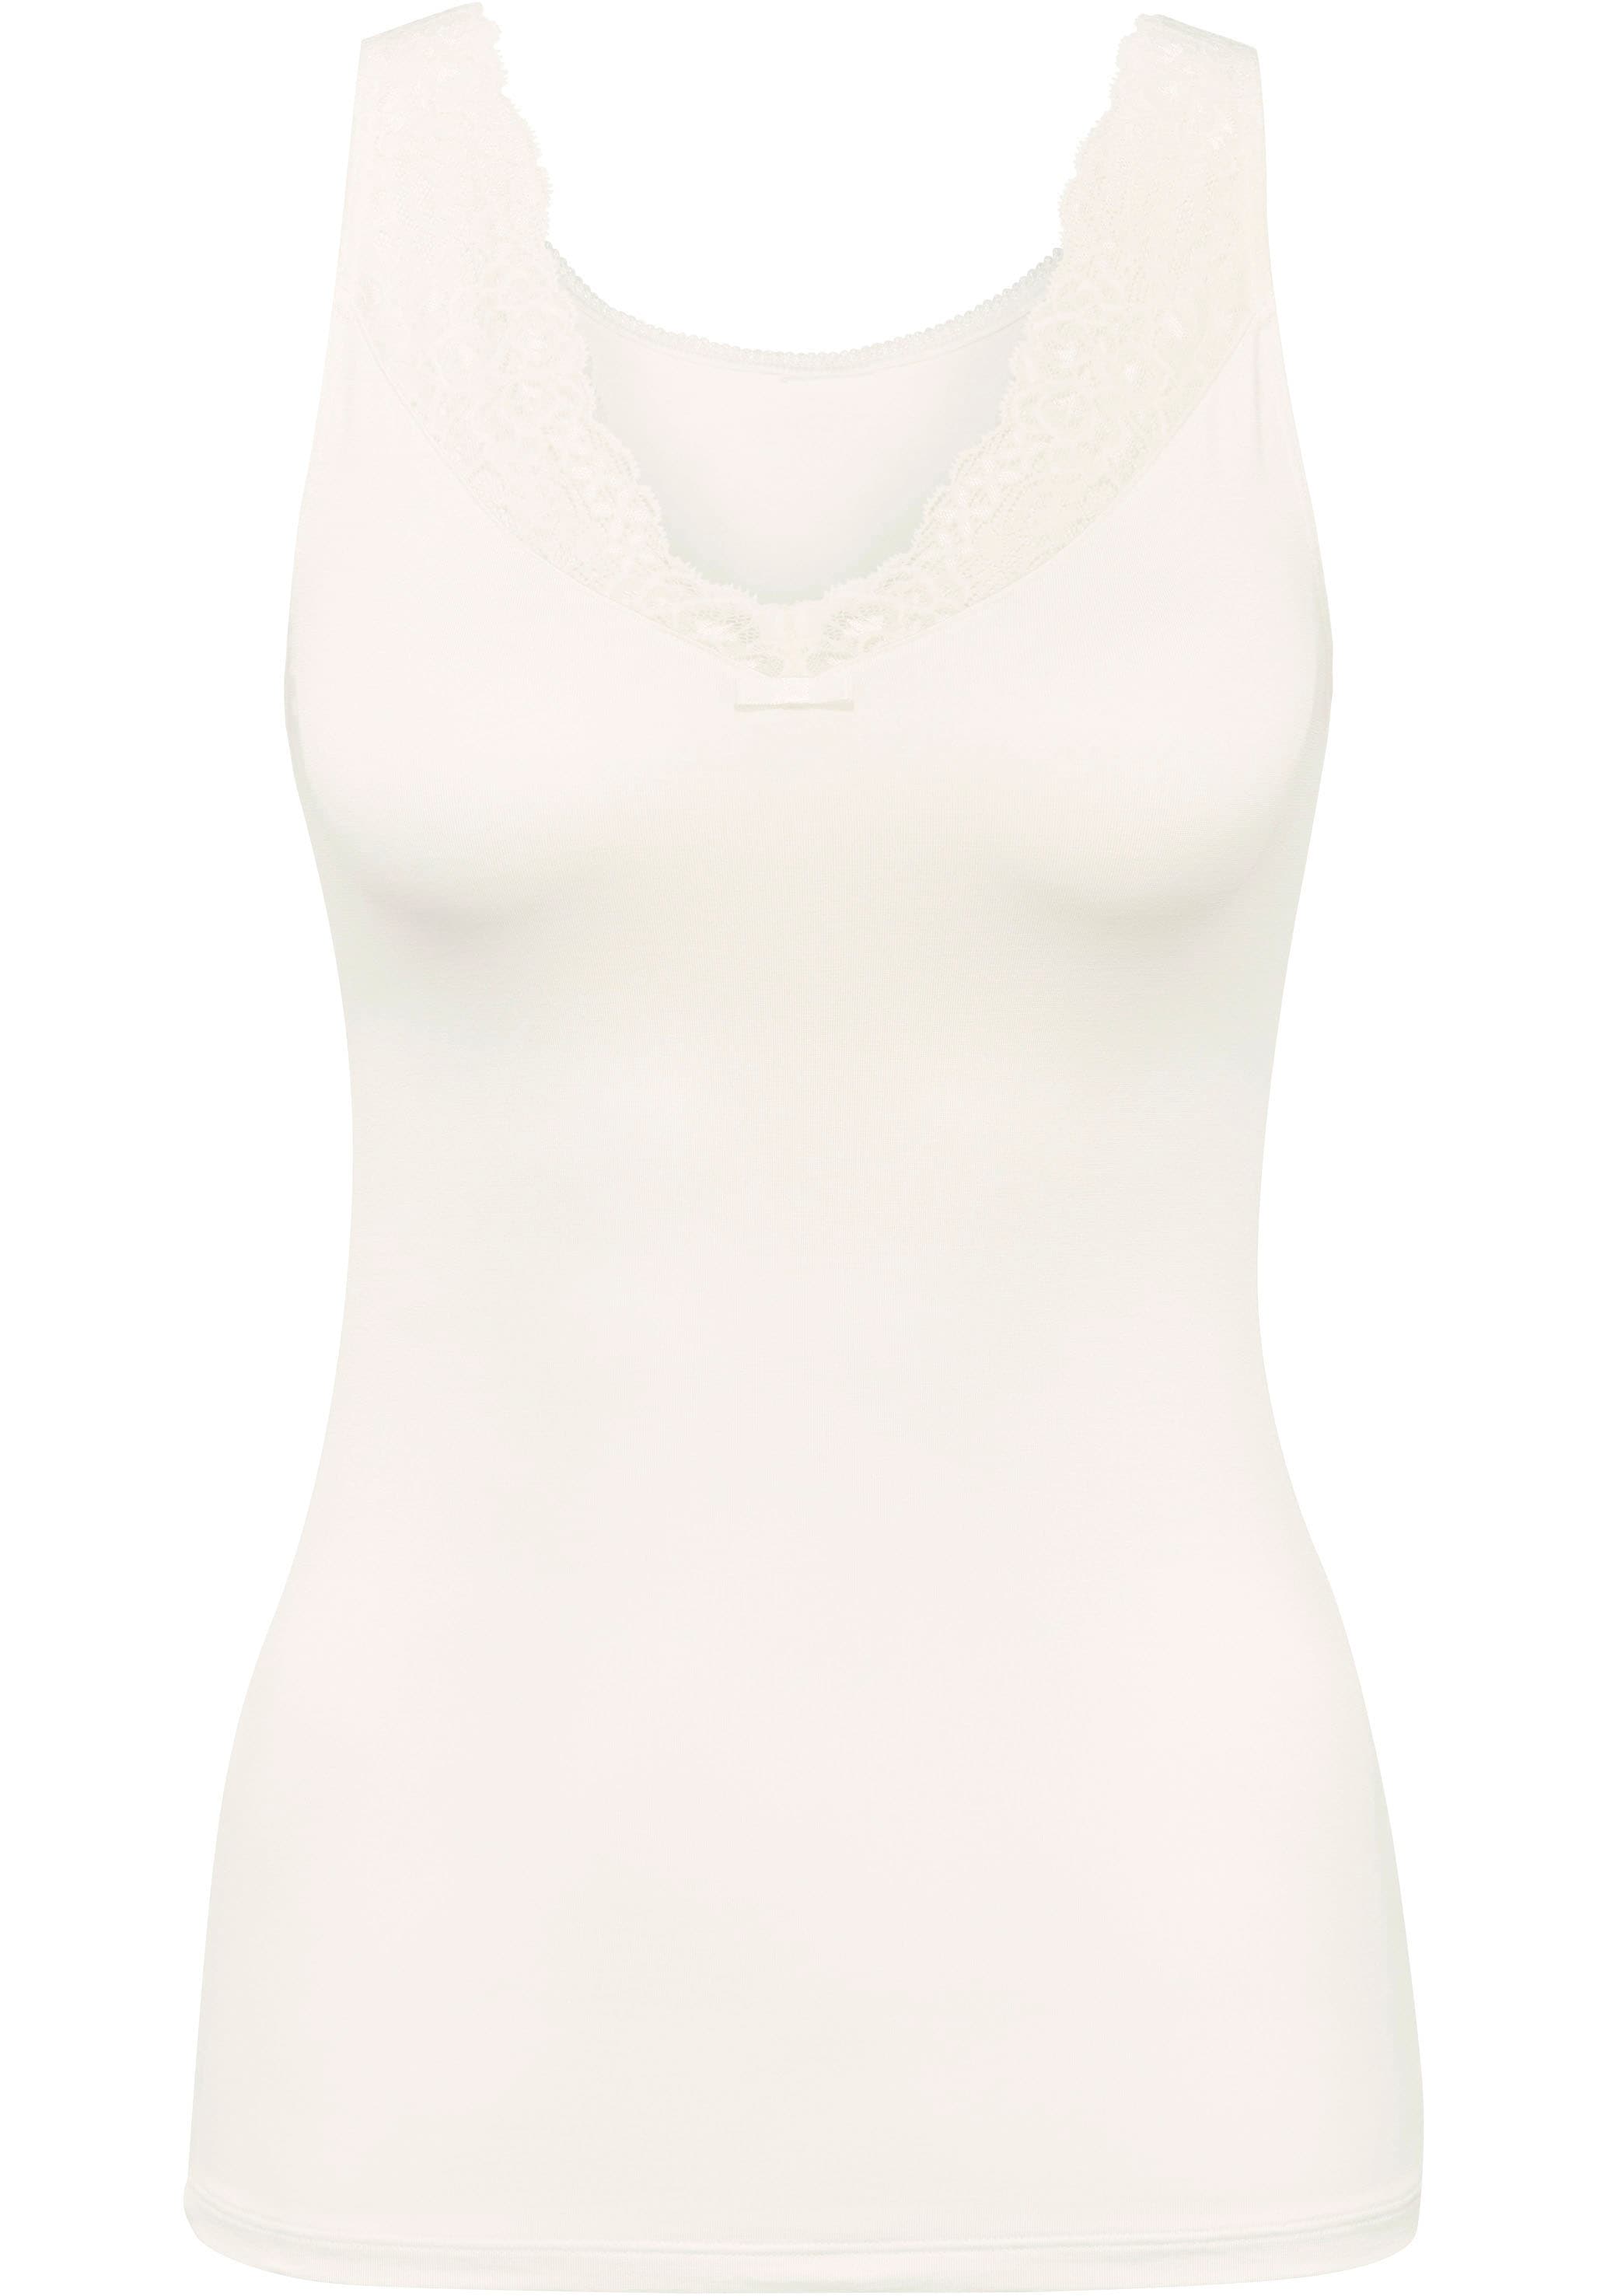 CALIDA Unterhemd »Sensual Secrets«, mit elegantem V-förmigen Spitzeneinsatz